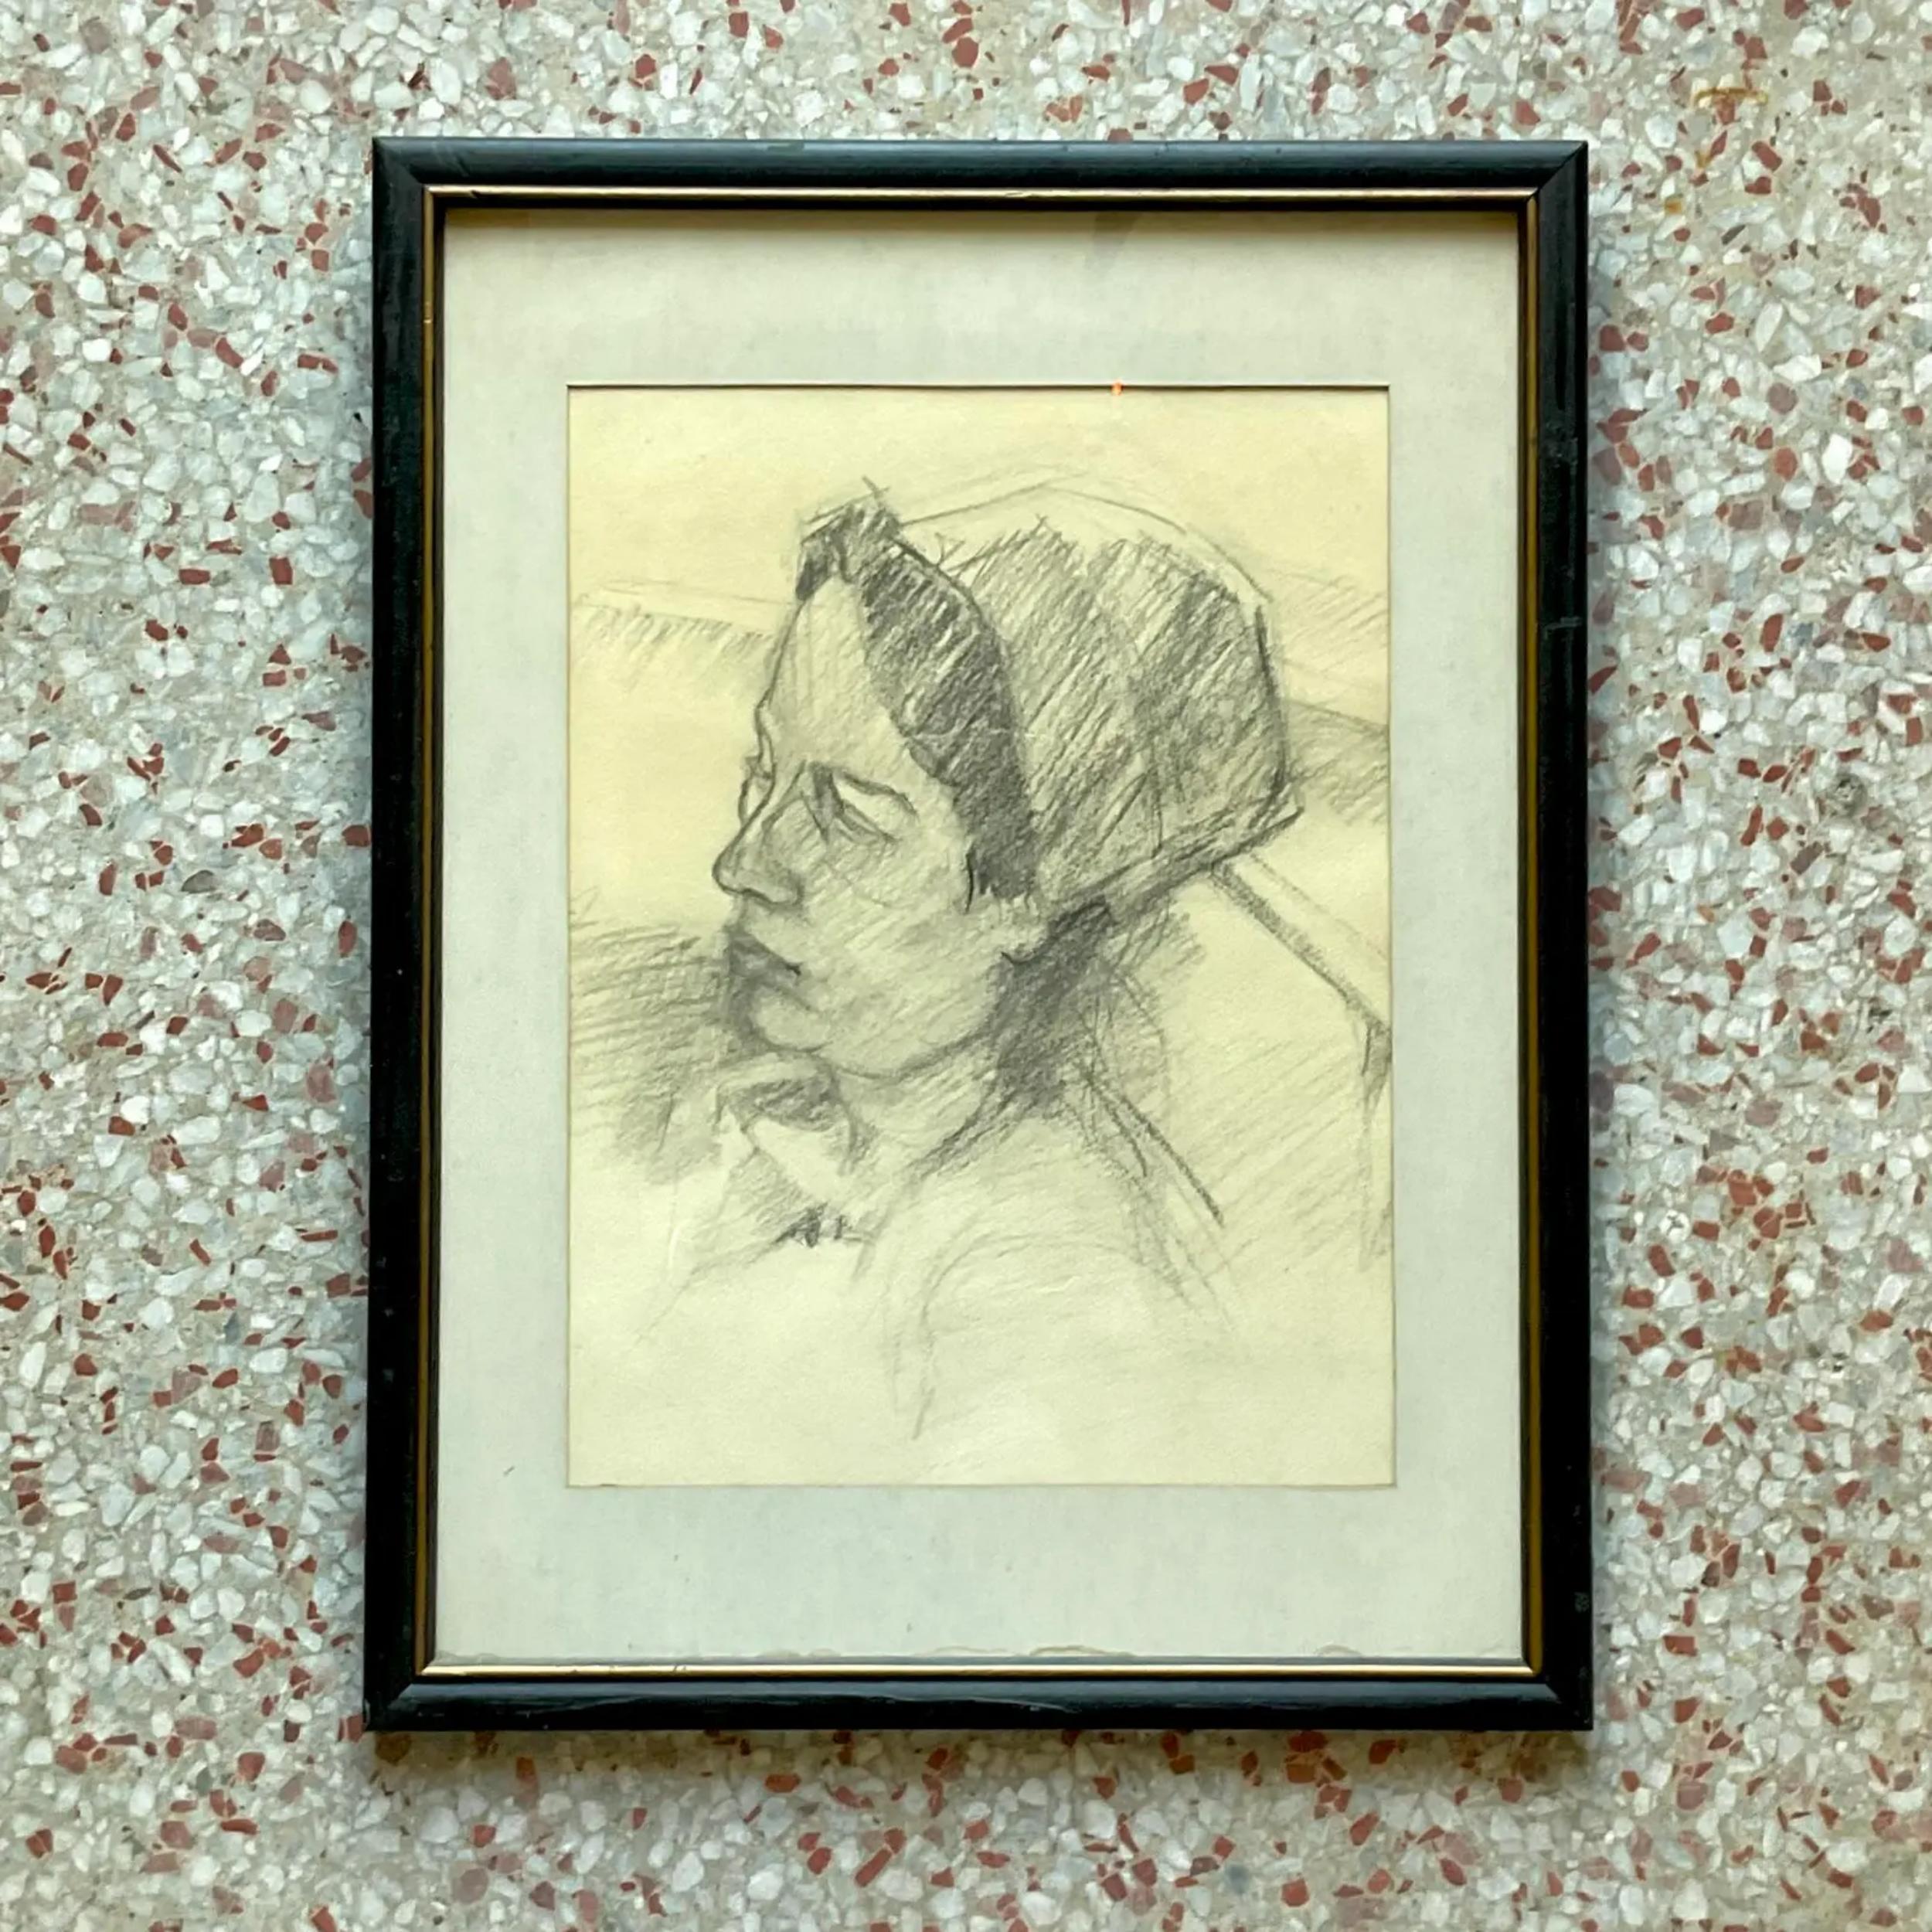 A Vintage Boho Bleistiftskizze einer Frau. Eine schicke Bleistift auf Papier Komposition. Ruhig und charmant. Nicht signiert. Erworben aus einem NY-Nachlass